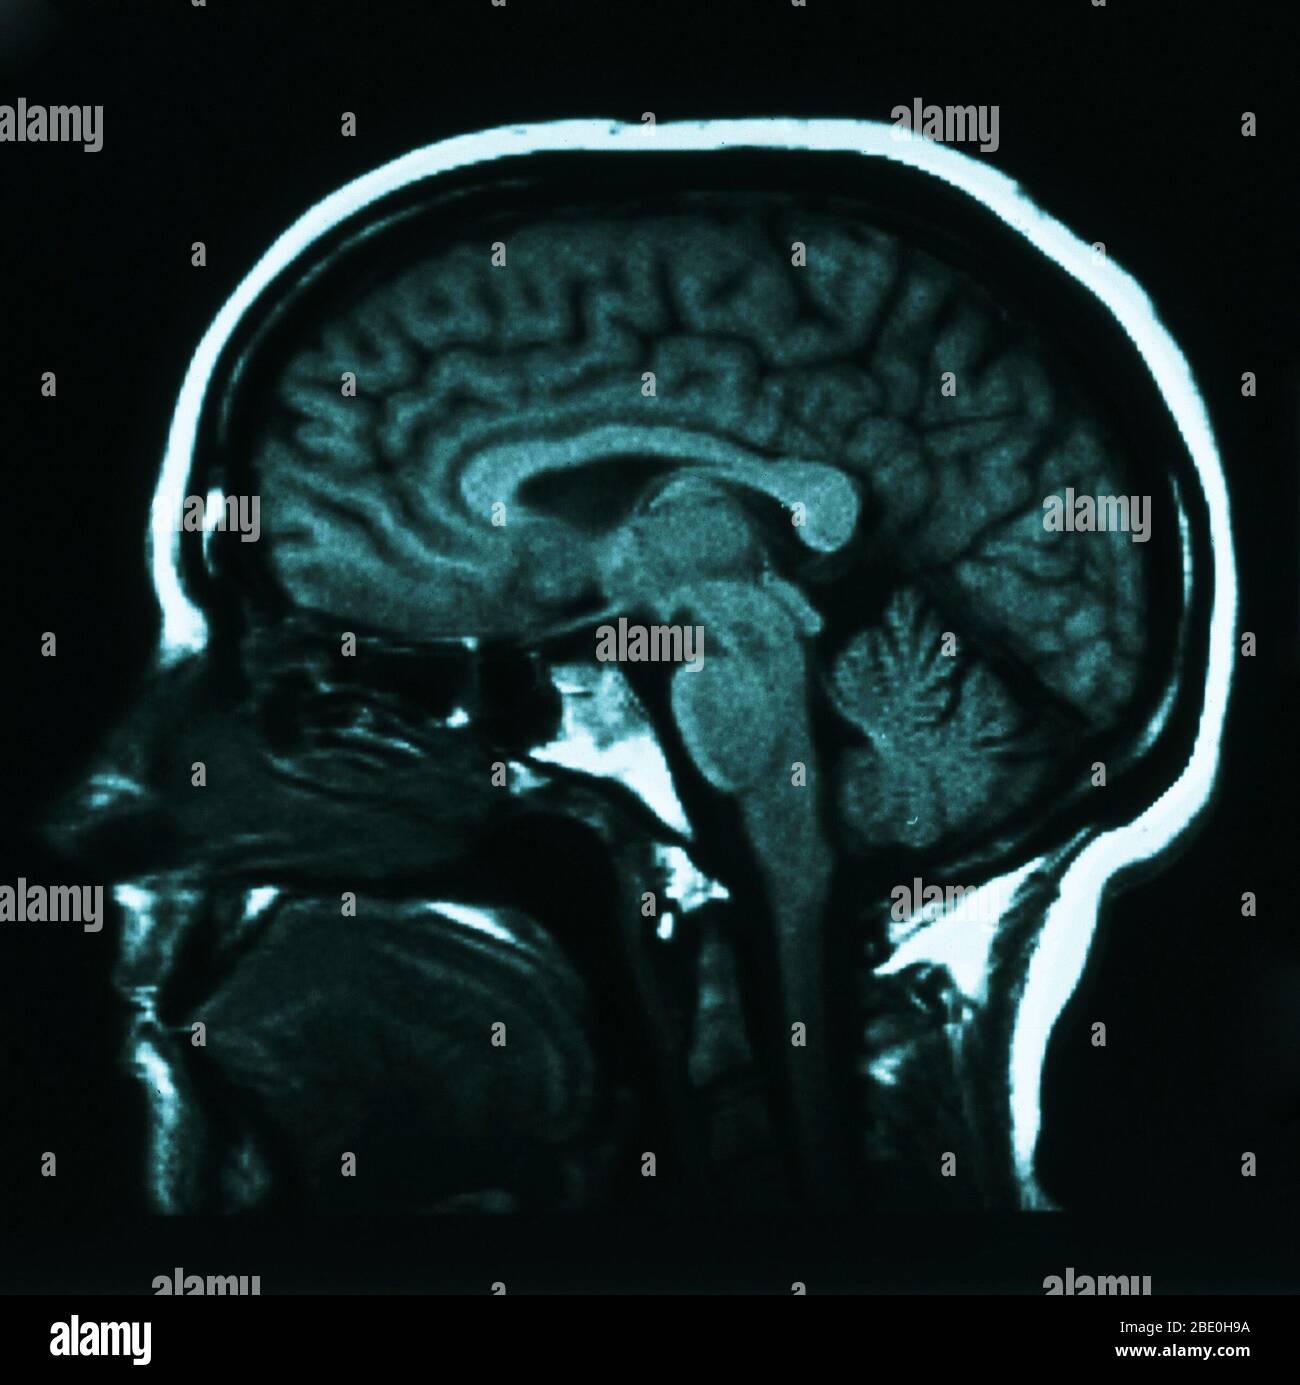 IRM sagital (desde el lado) ponderada en T1 que muestra la anatomía normal del cerebro, incluyendo: La corteza cerebral, el cuerpo calloso, el tálamo, la médula oblongata, el cerebelo y el tronco cerebral. Foto de stock